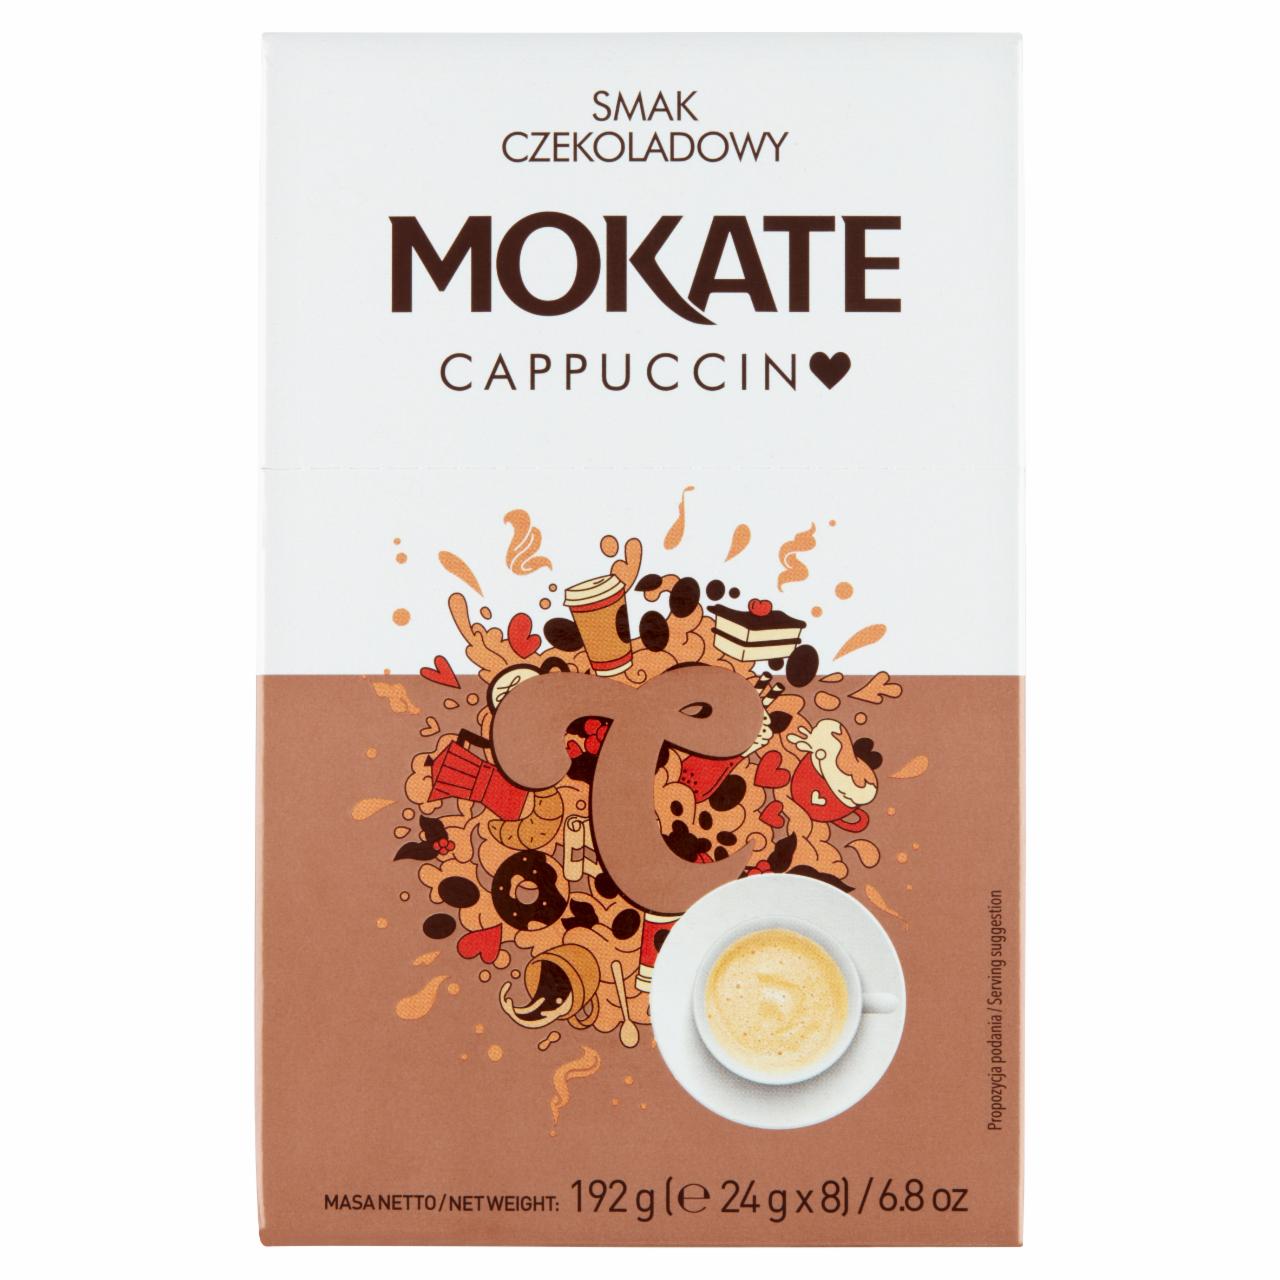 Zdjęcia - Mokate Cappuccino smak czekoladowy 192 g (8 x 24 g)